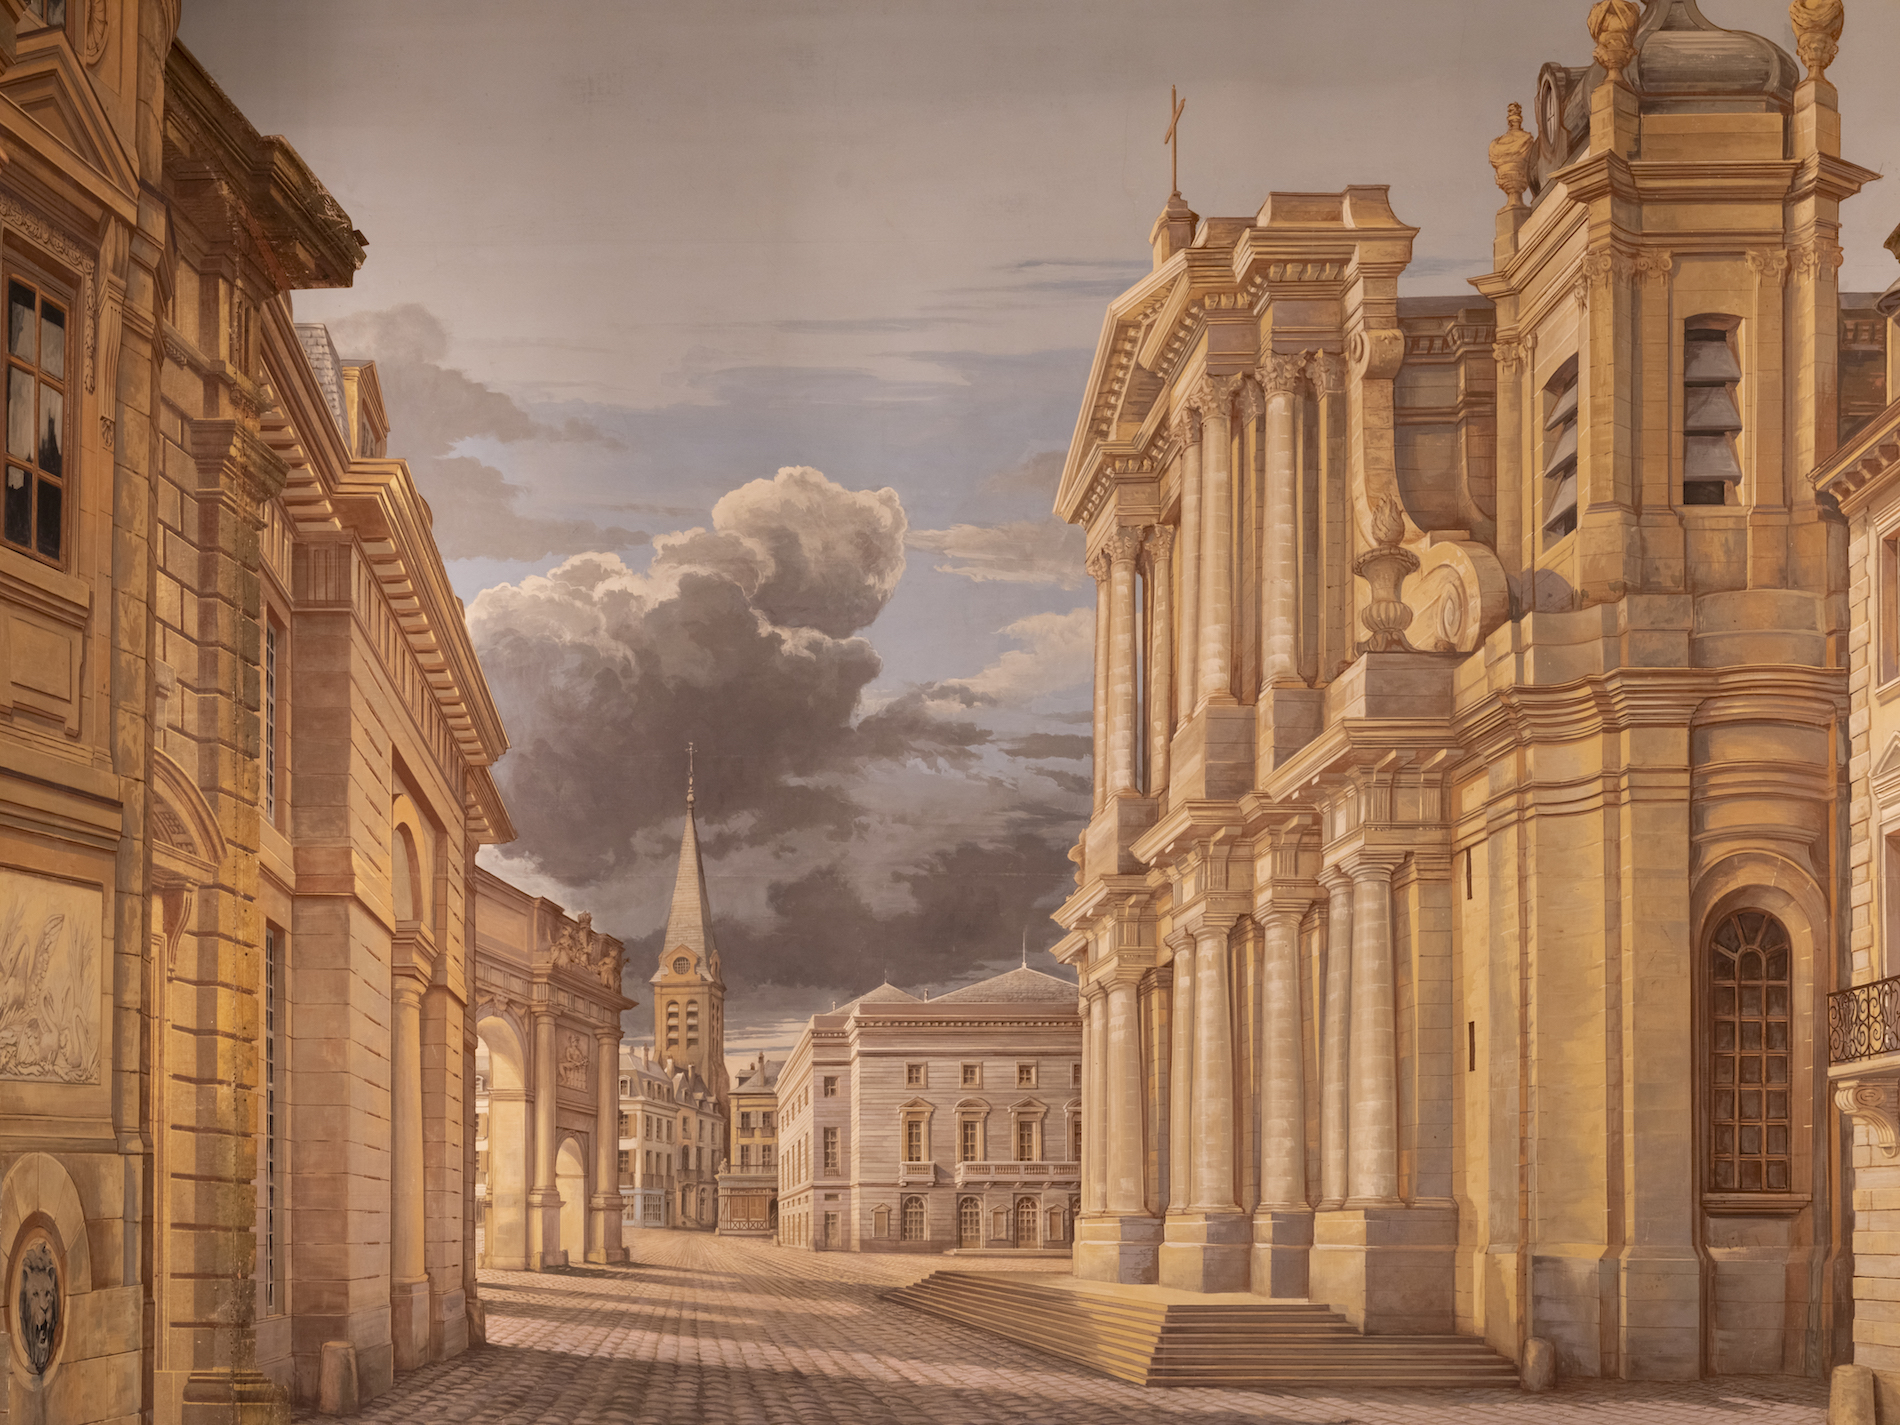 Vue de la toile de fond restituée. © Château de Versailles / T. Garnier